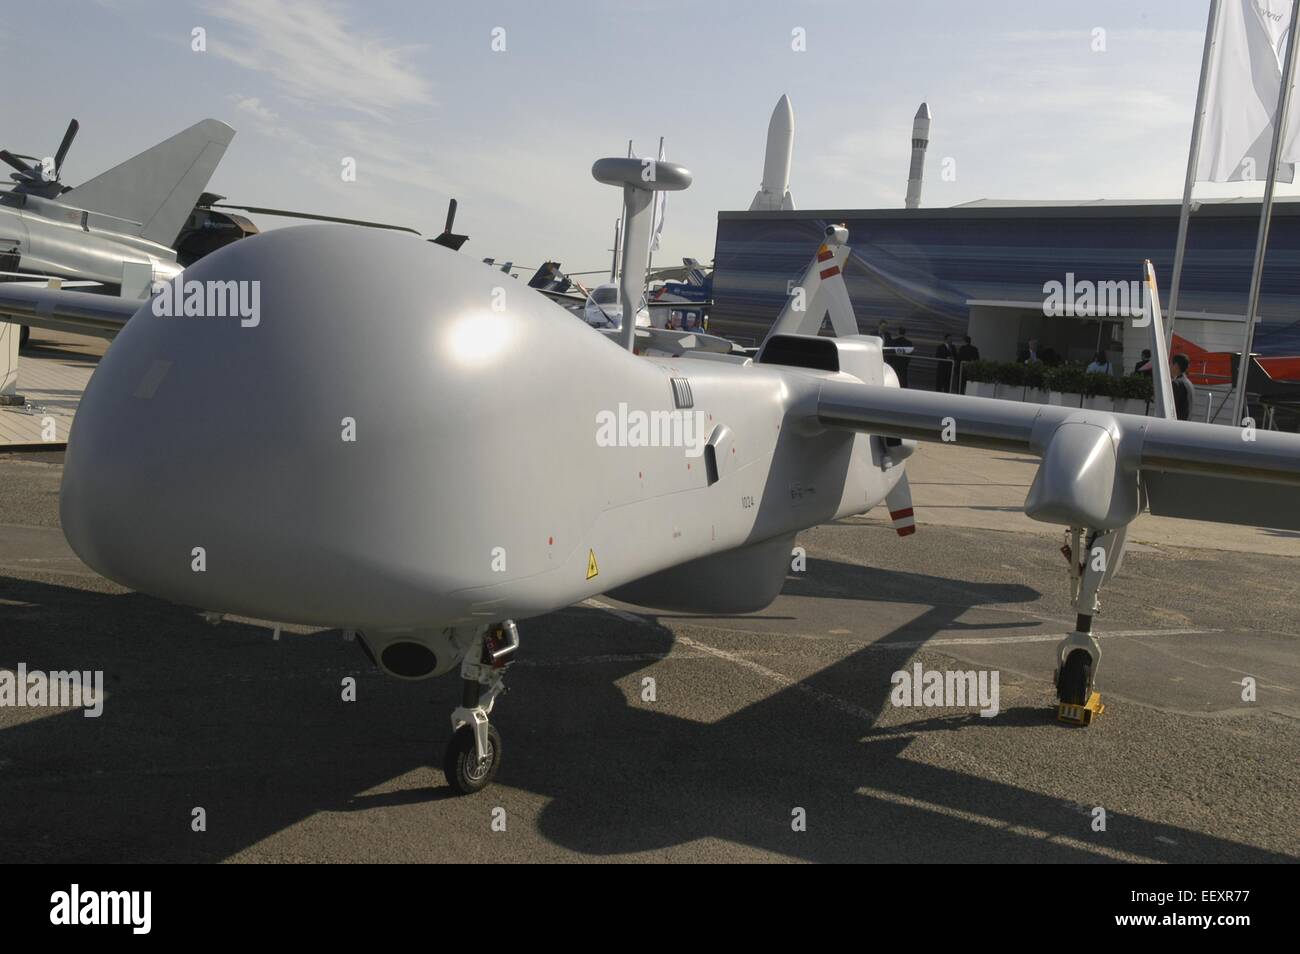 Vehículo aéreo no tripulado (UAV) de la producción francesa Harfang Foto de stock